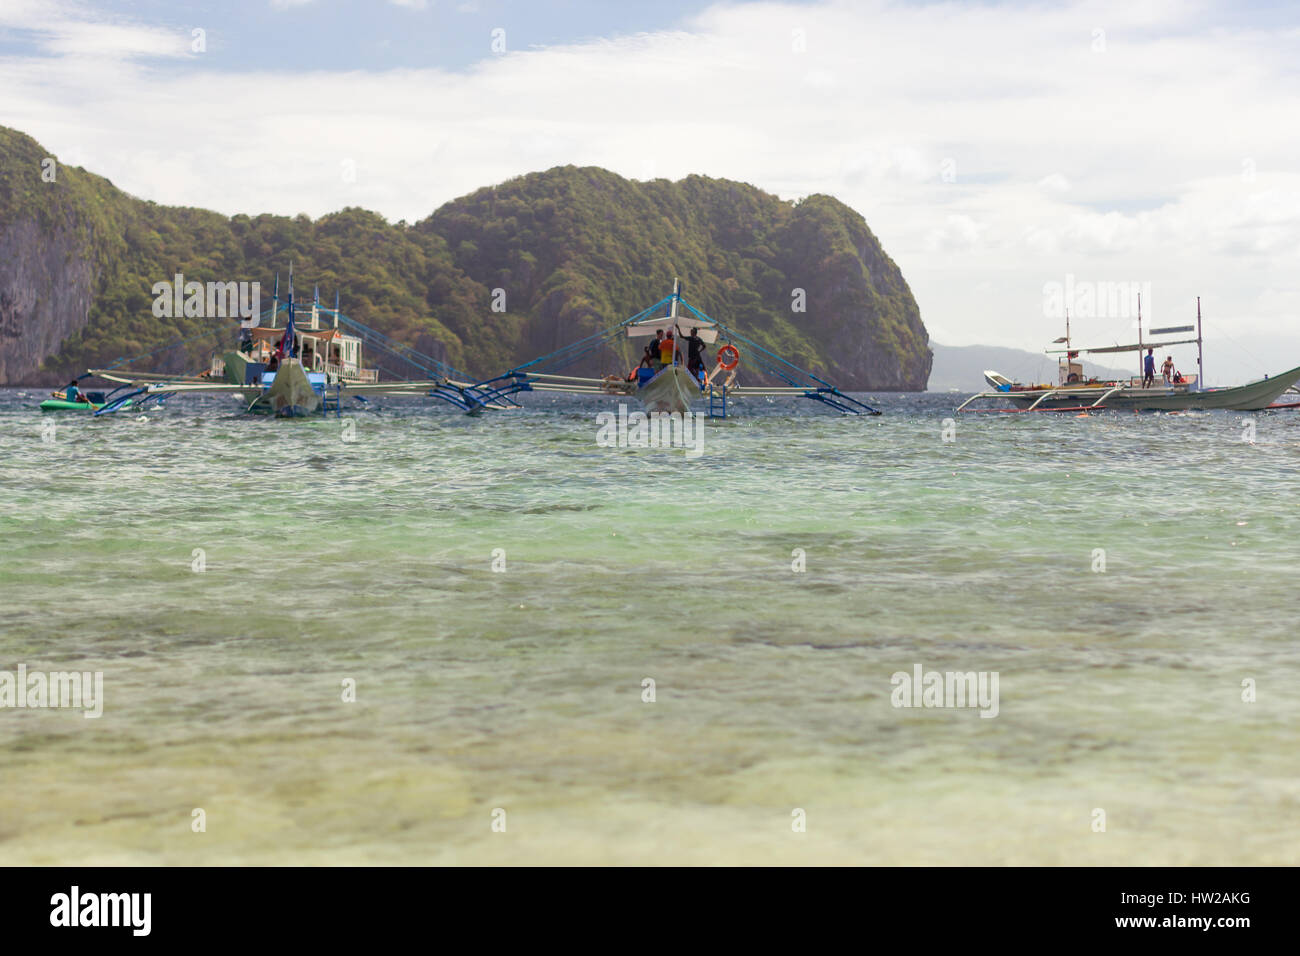 Pompe de bateaux philippins Tradition rivage d'une île paradisiaque en espérant circuit touristique avec le fond de l'une des îles. Banque D'Images